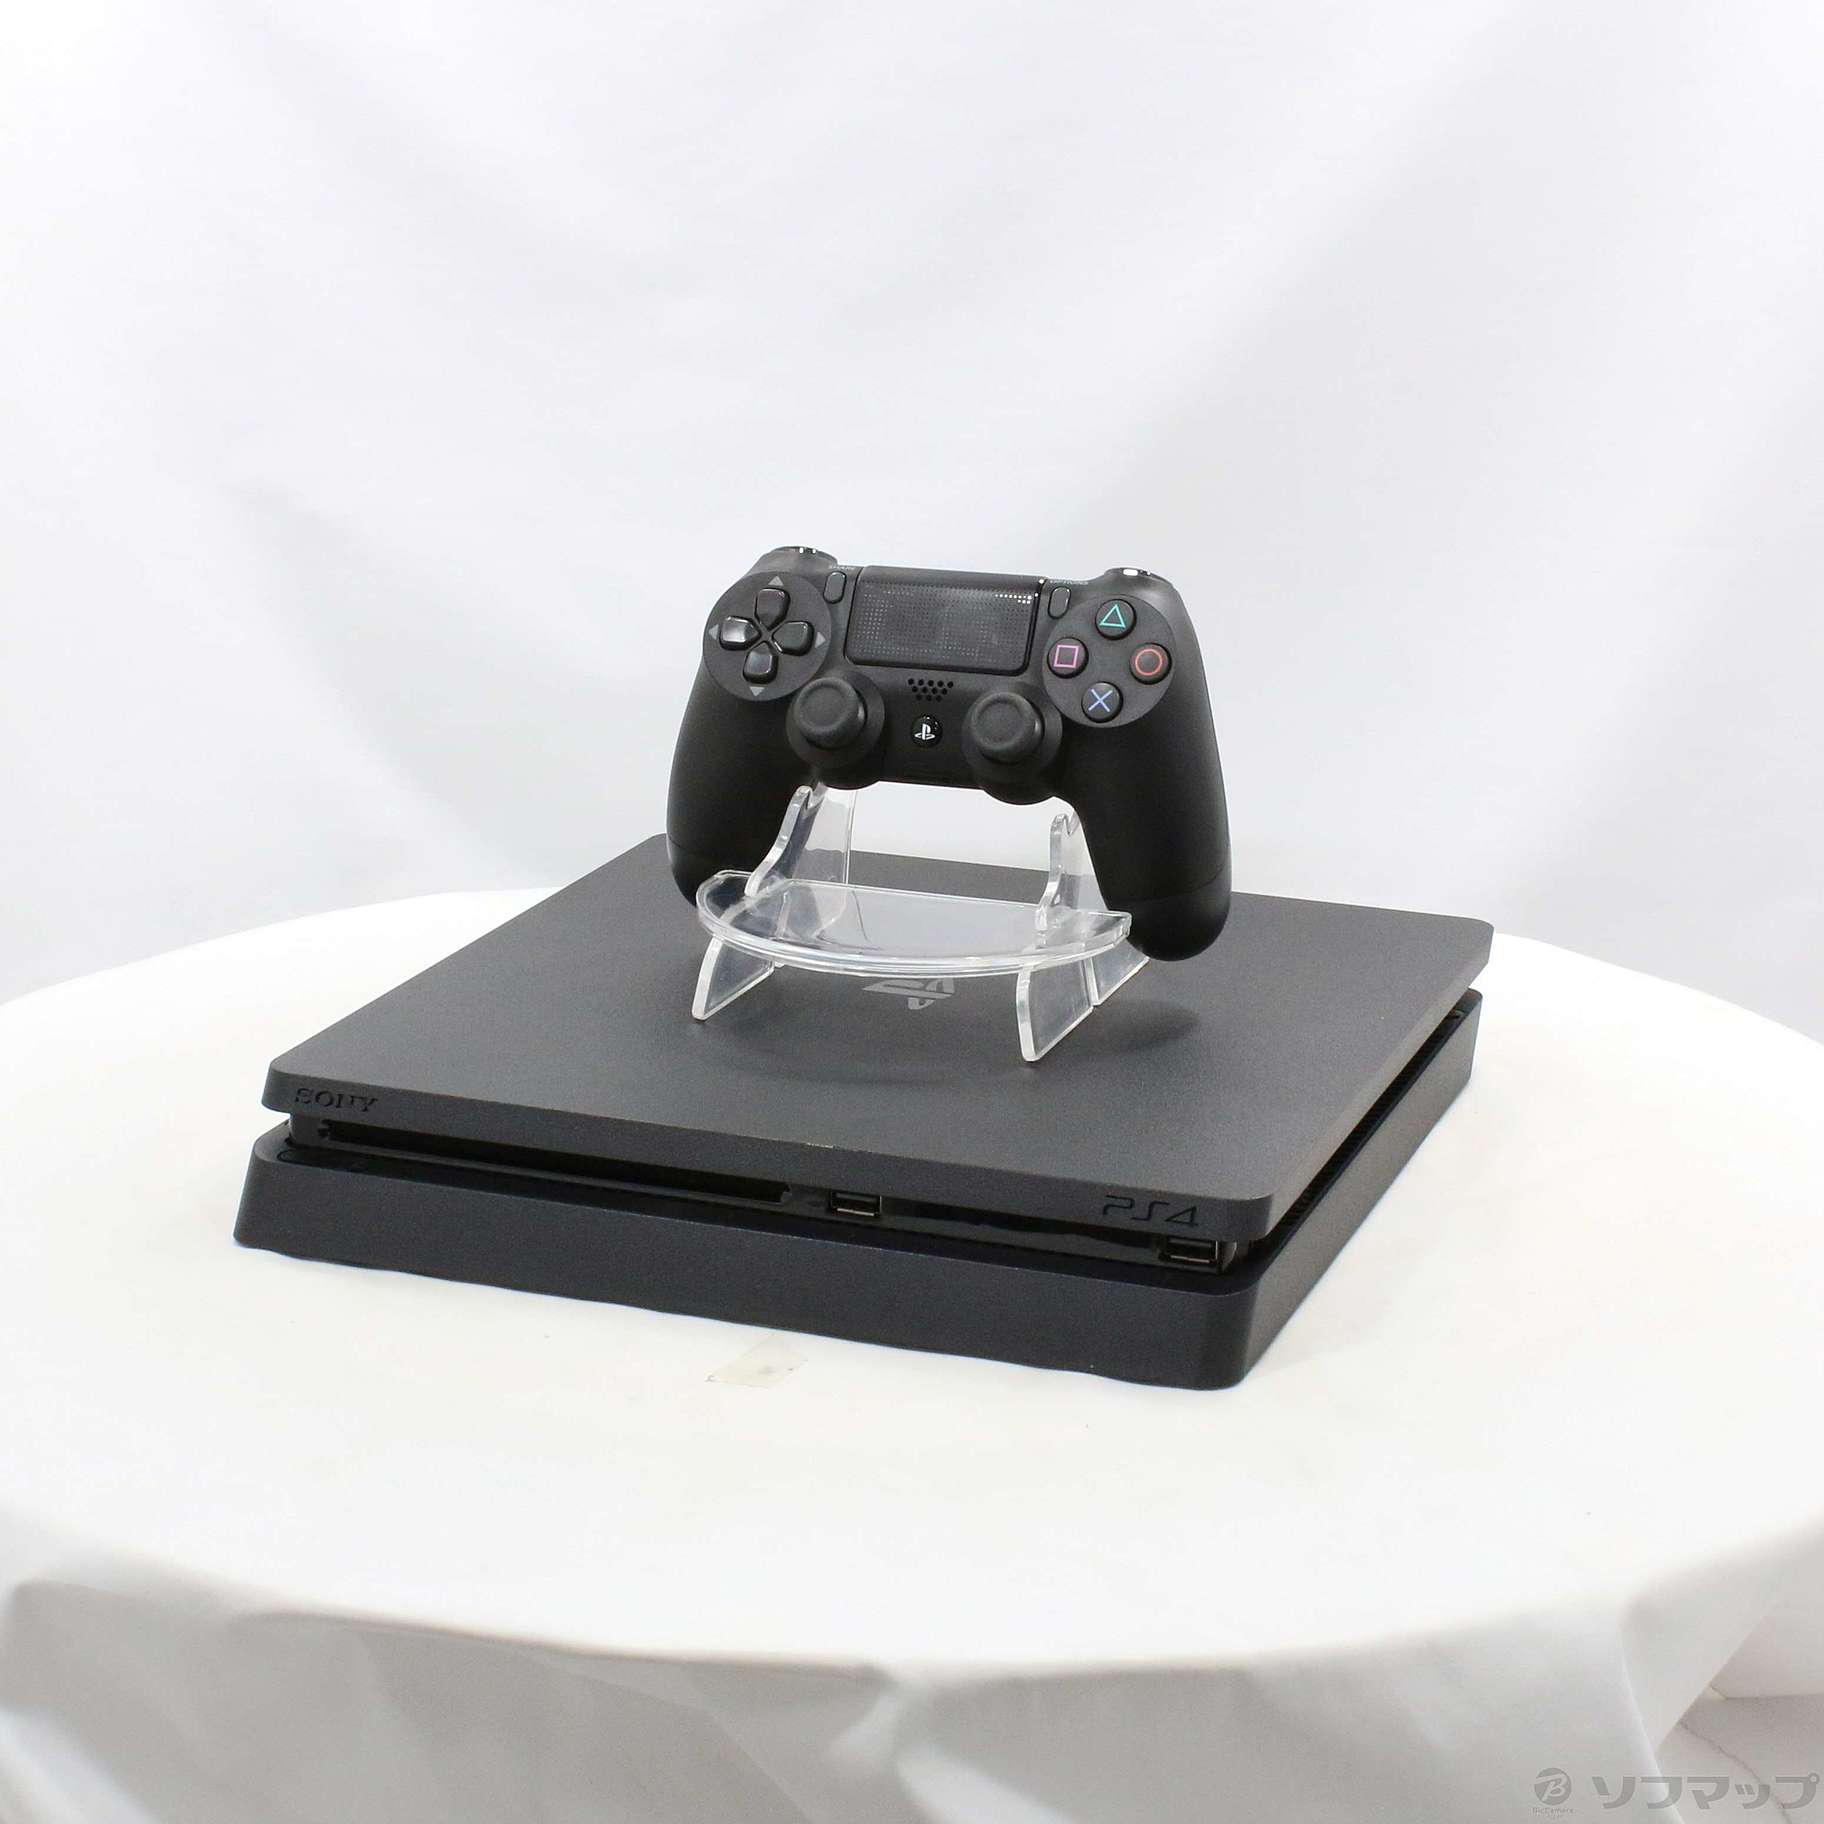 中古品〕 PlayStation 4 ジェット・ブラック 500GB CUH-2200AB01